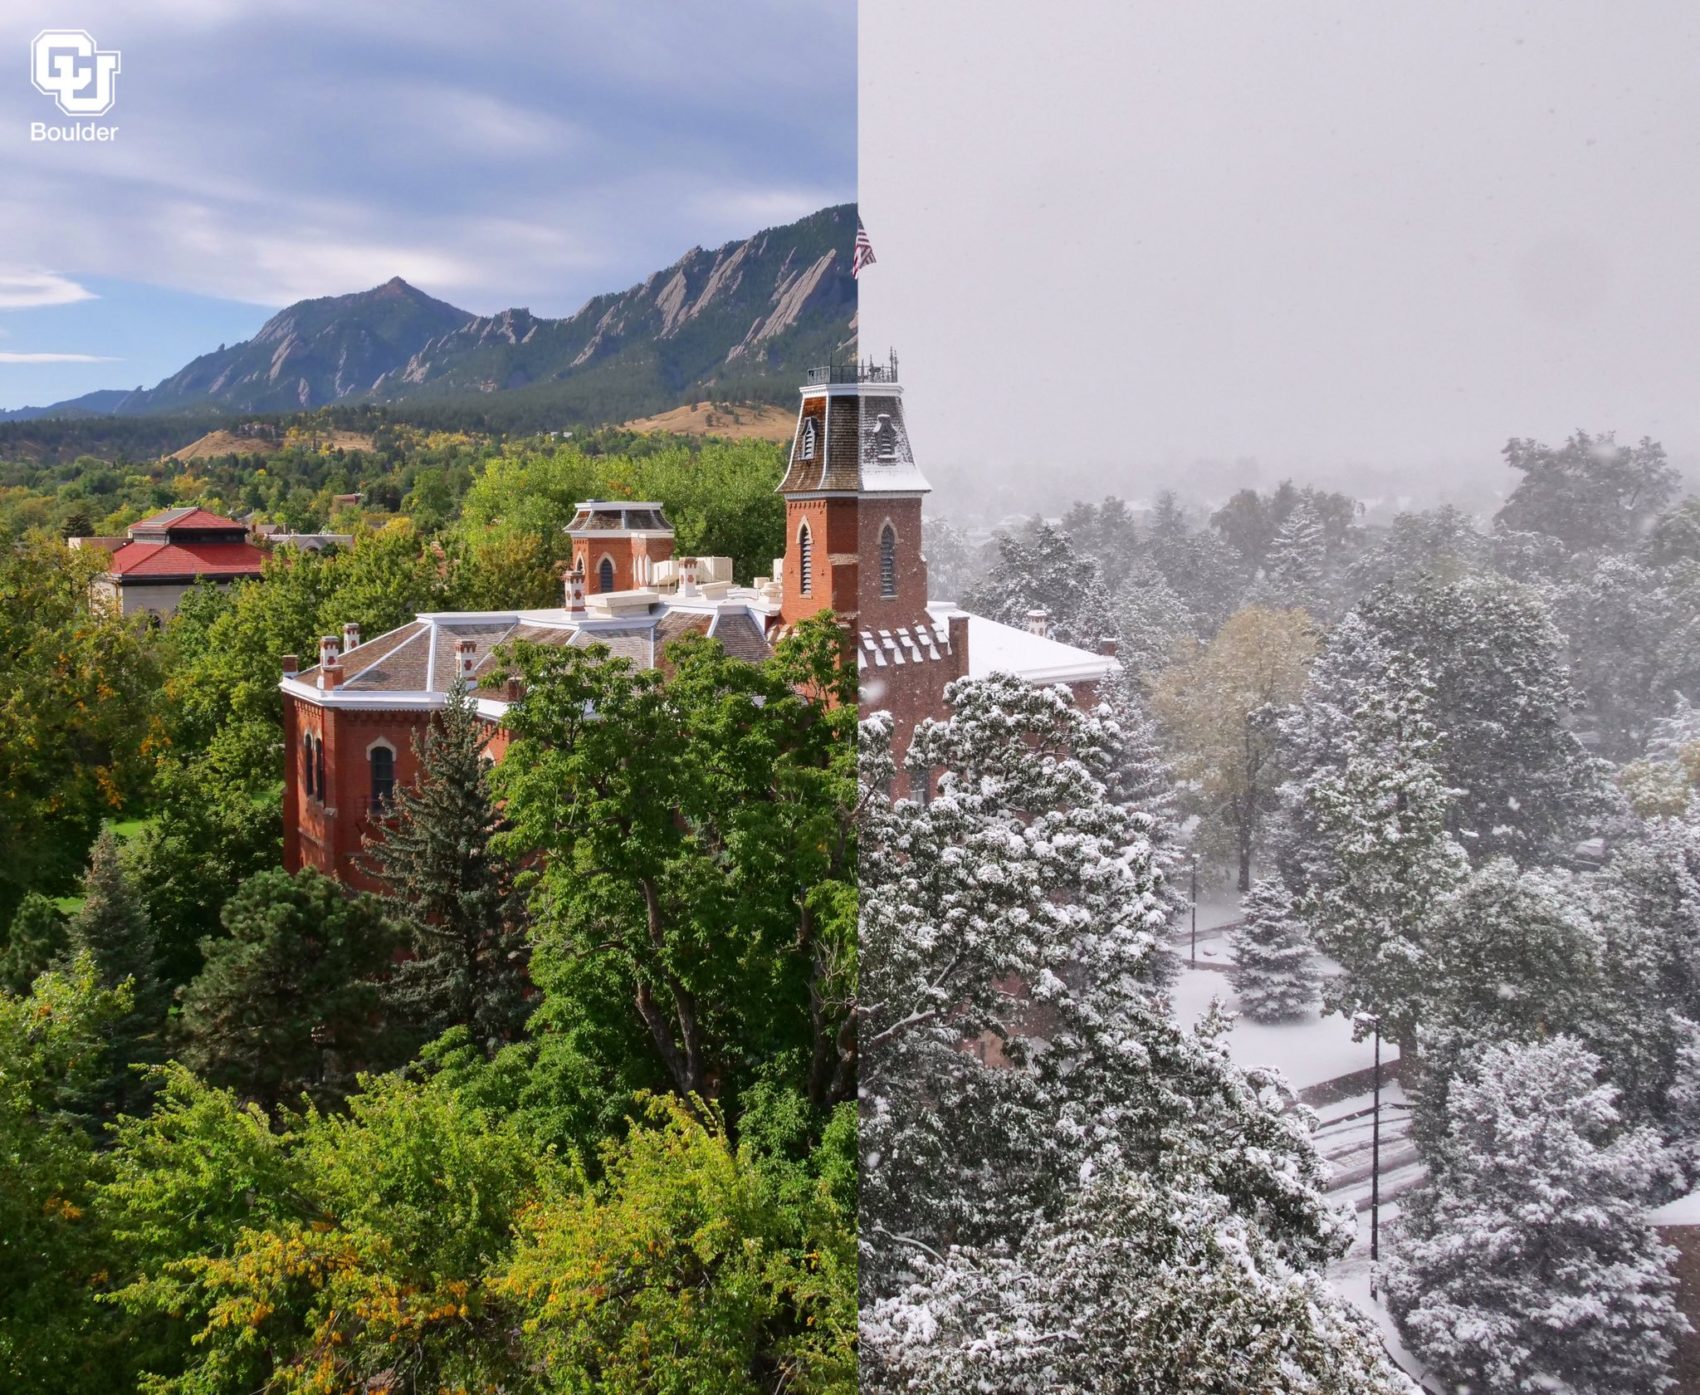 Denver, Colorado, temperature drop, record breaking